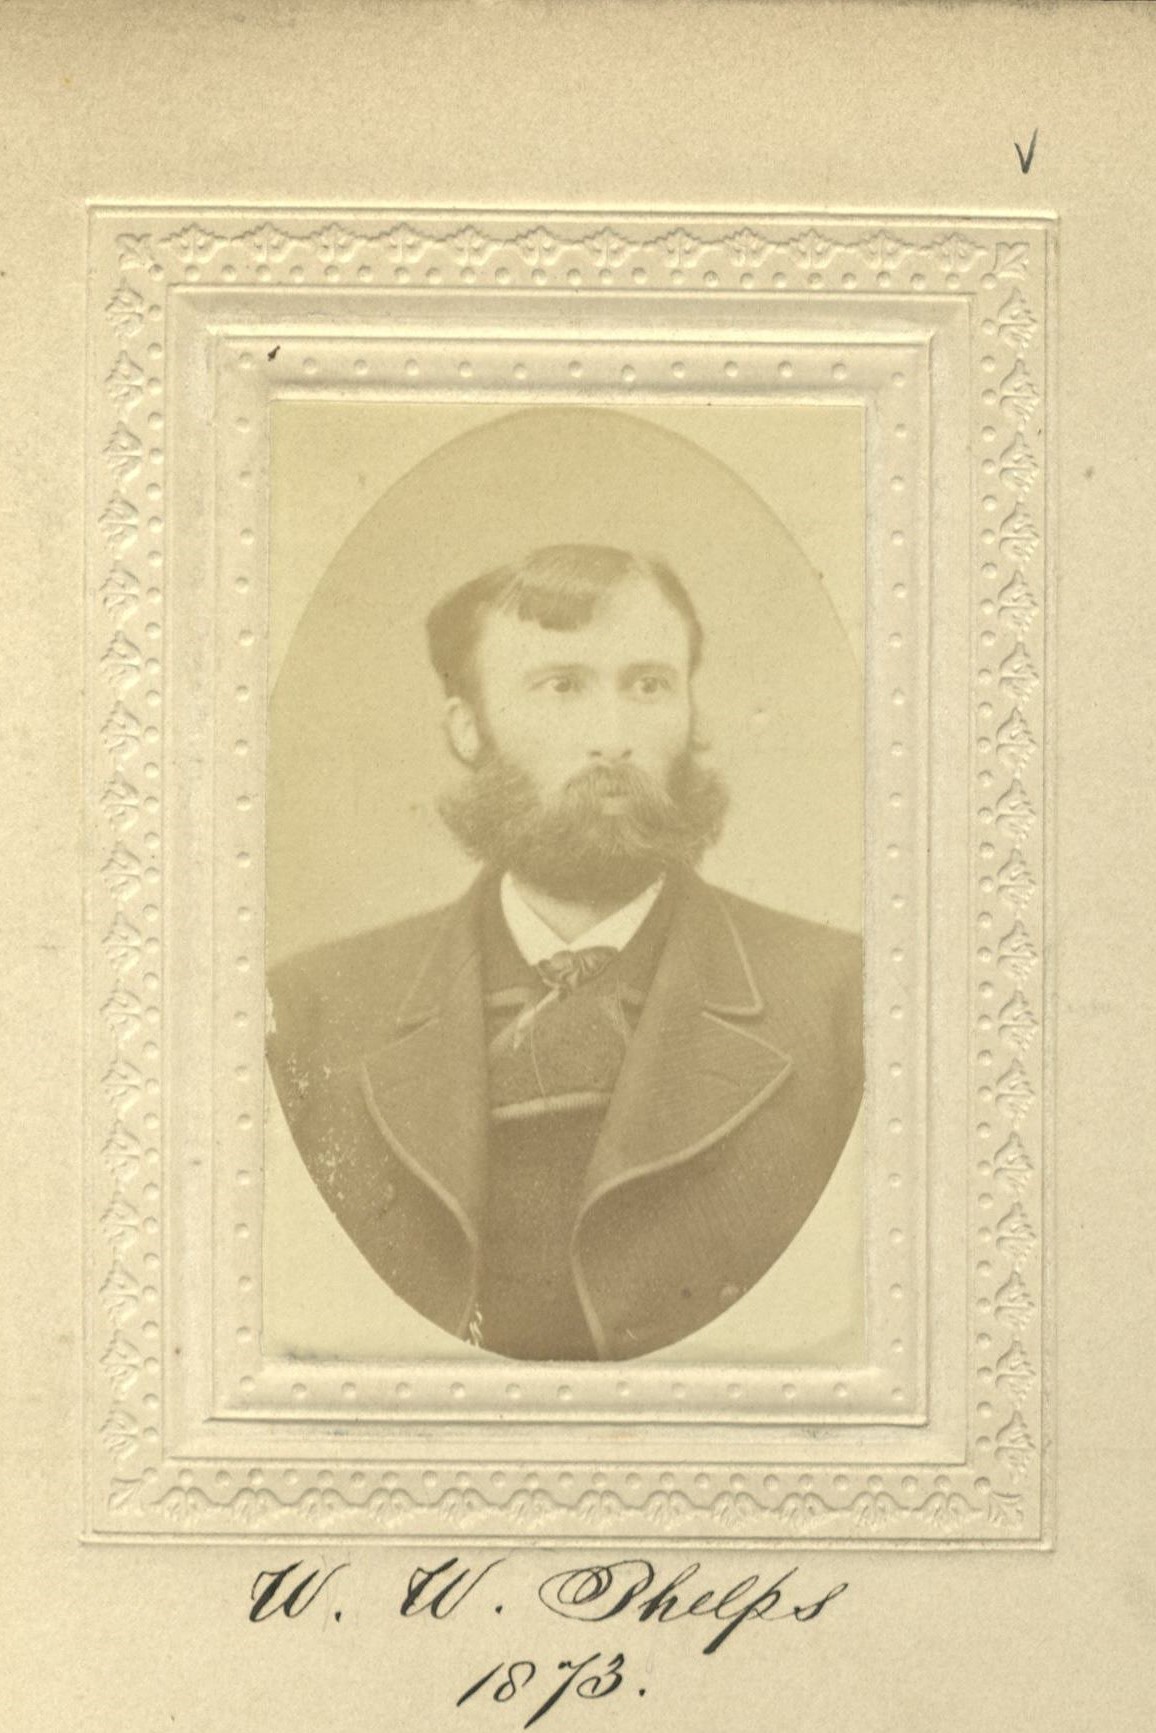 Member portrait of William Walter Phelps